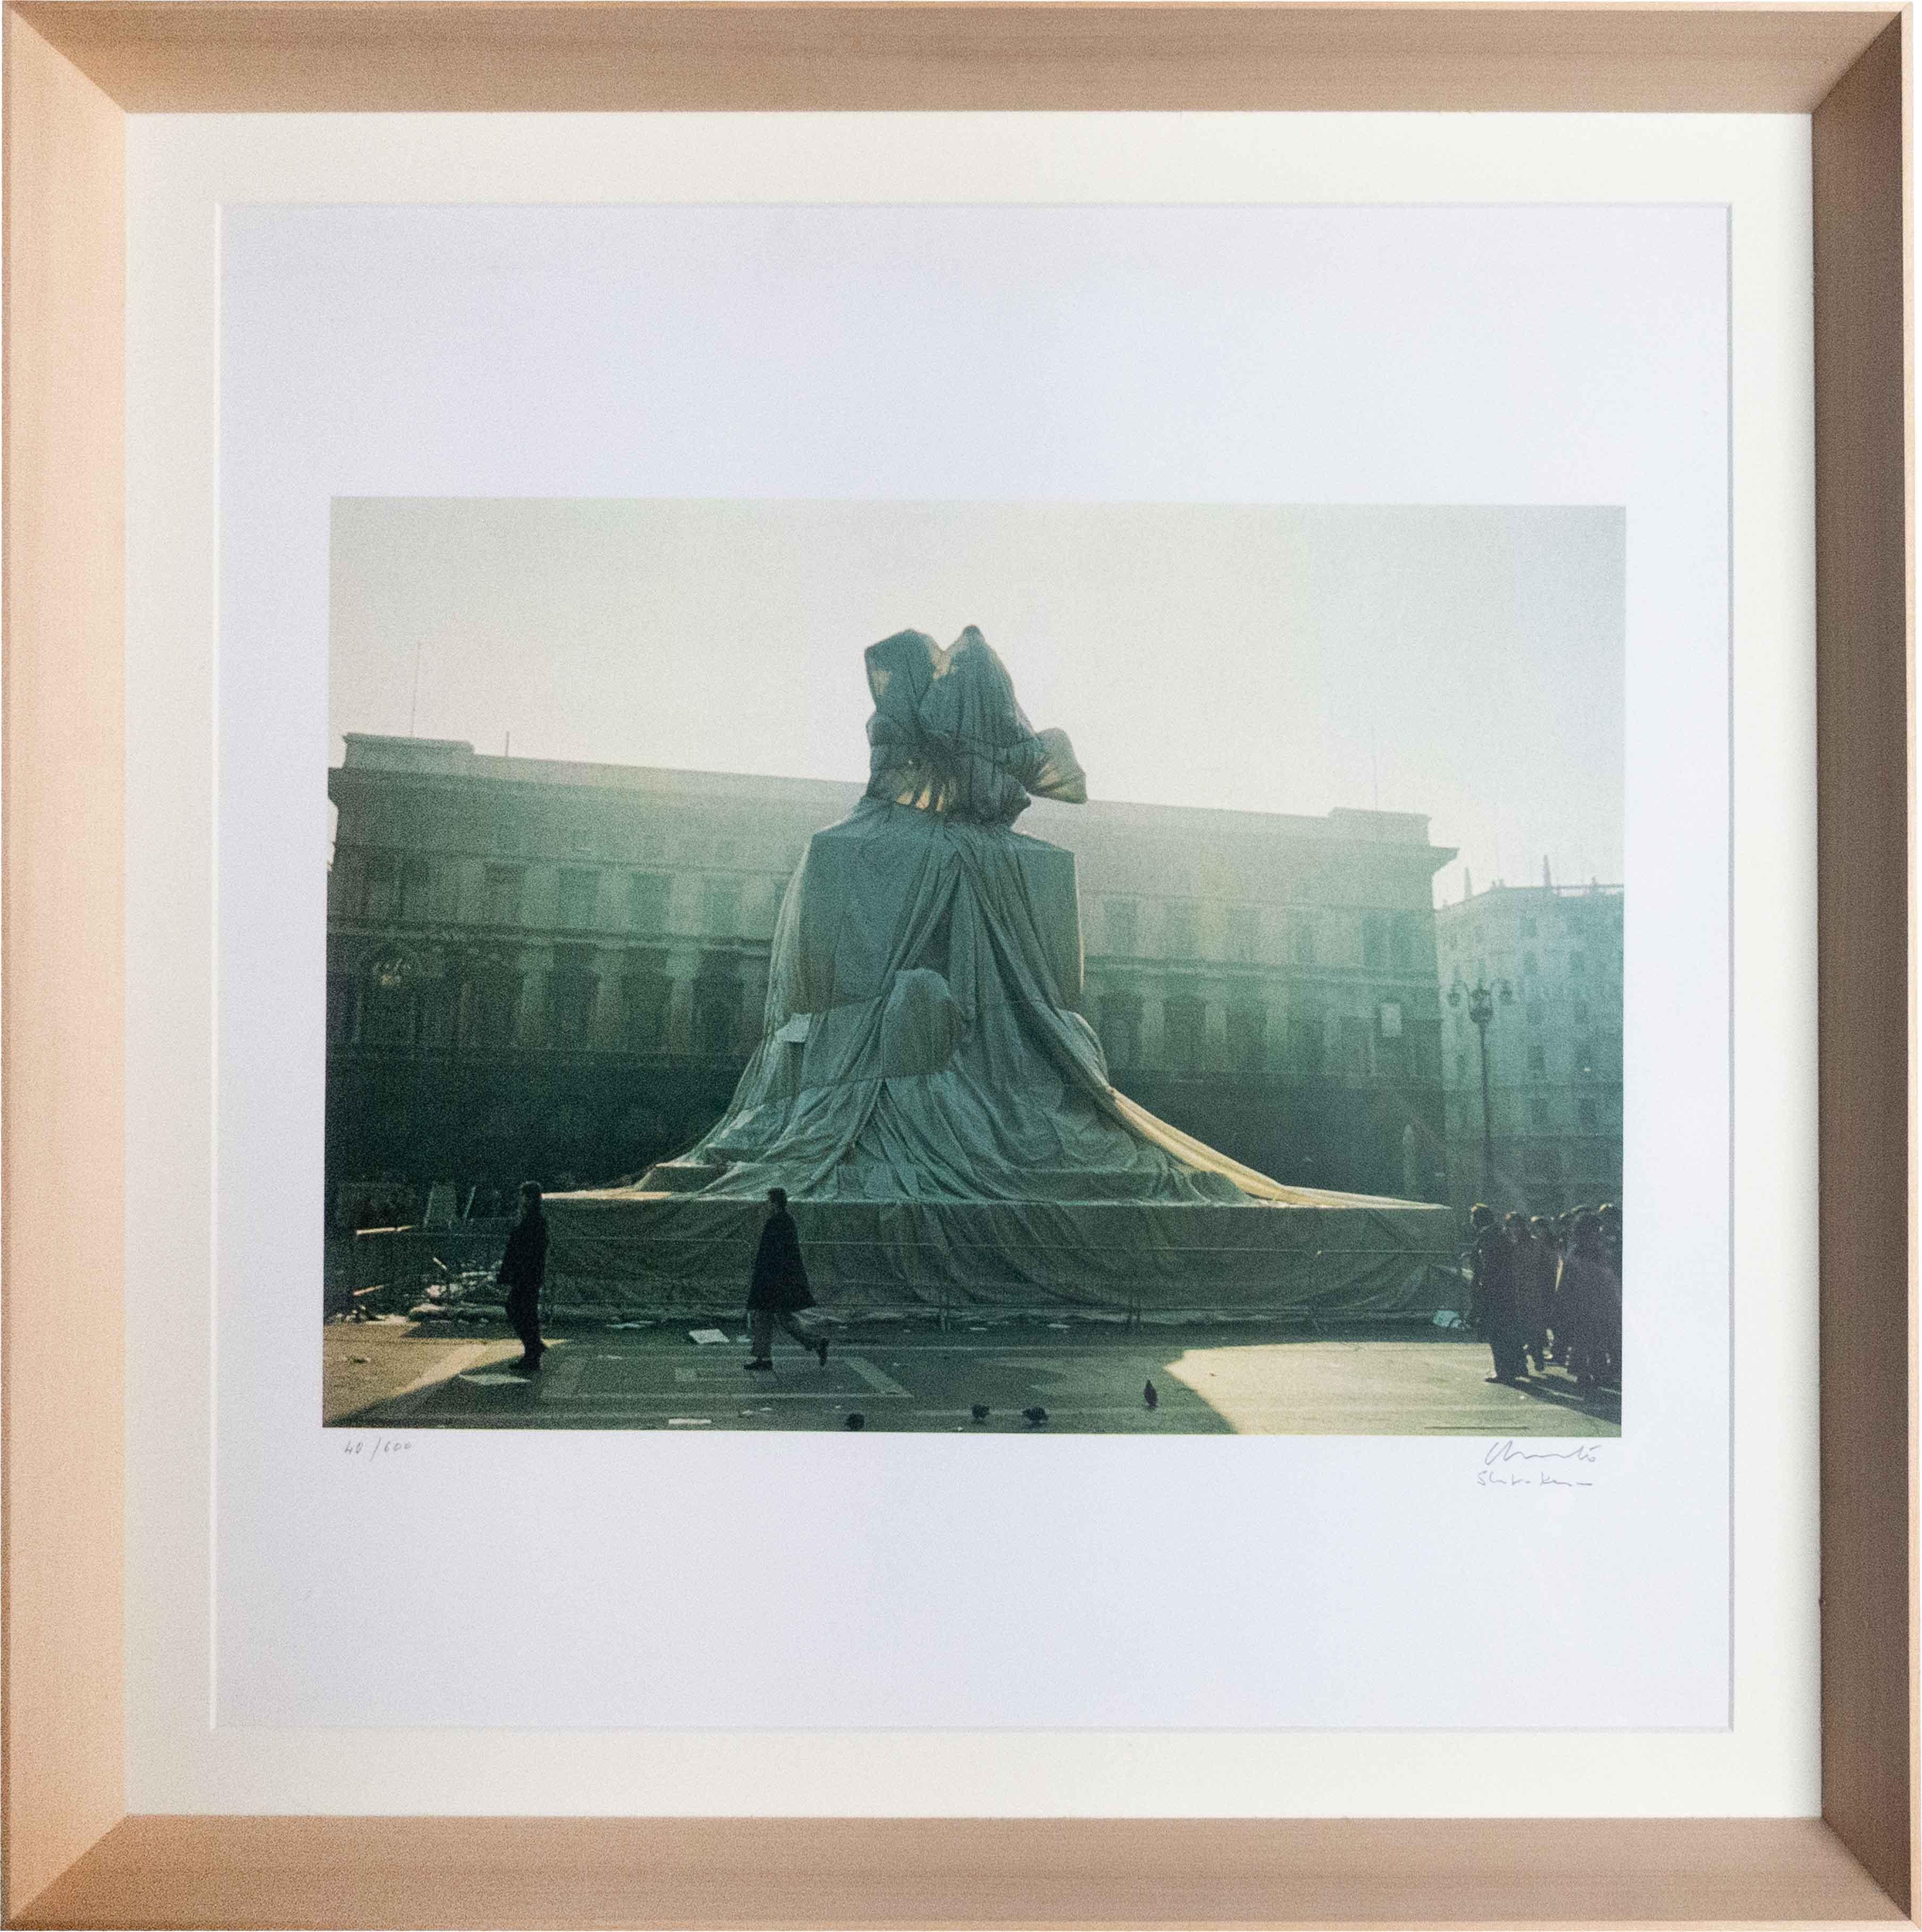 Eingewickeltes Denkmal für Victor Emanuel, 1973, Fotolithographie, Land Art – Photograph von Christo and Jeanne-Claude